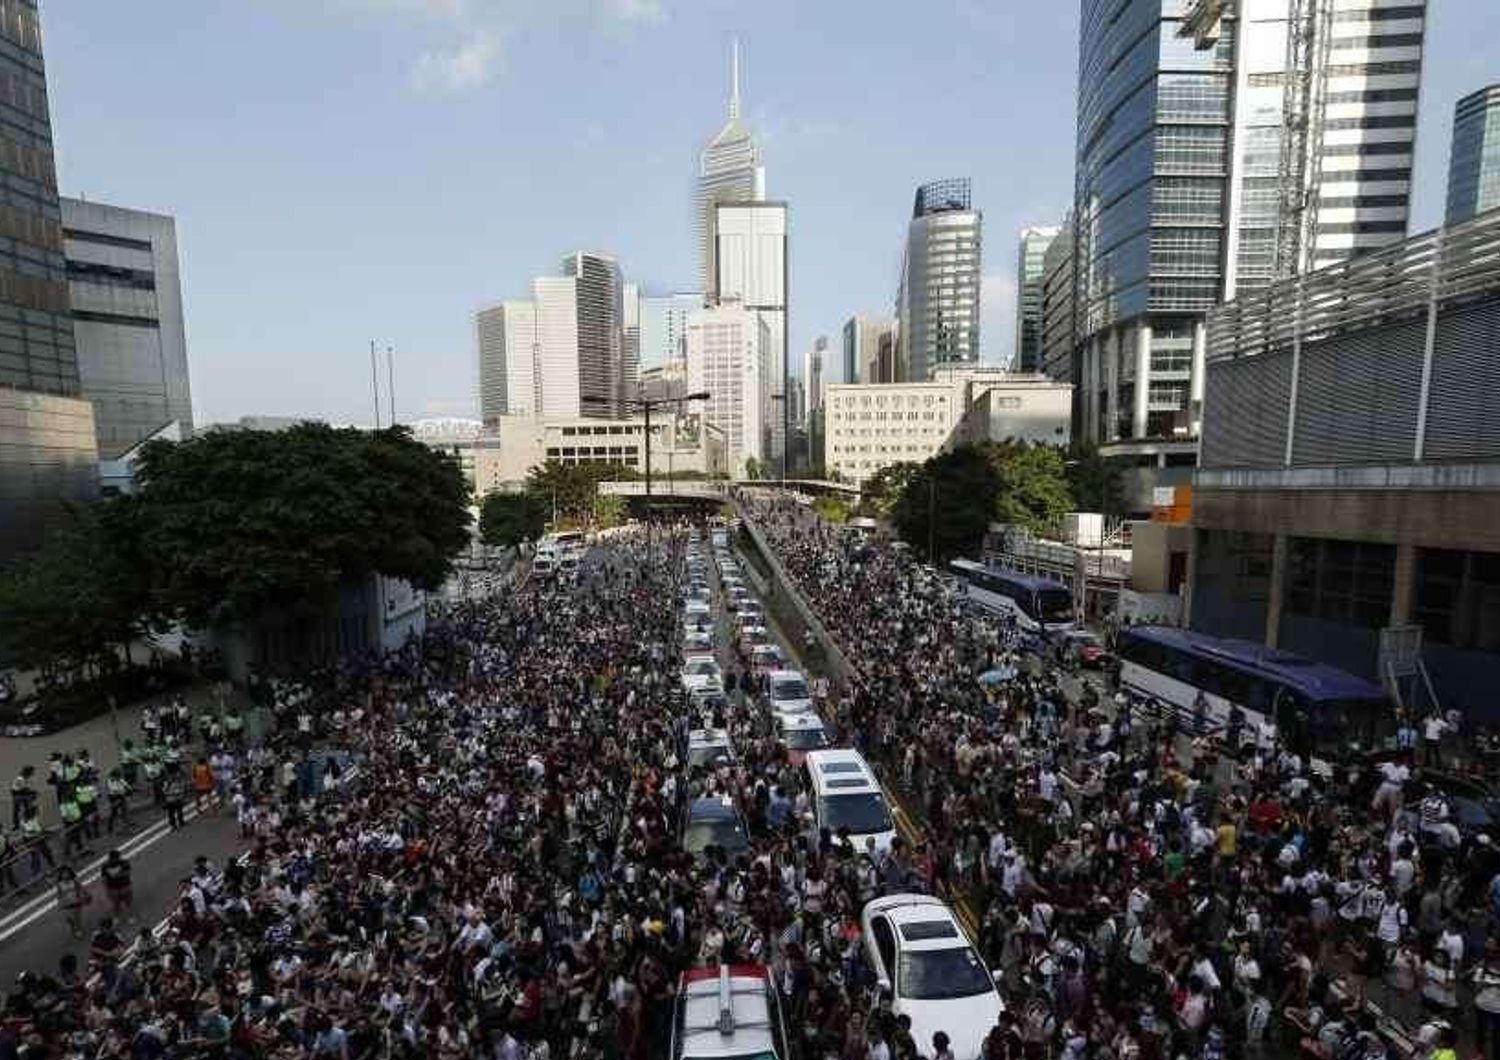 Dilaga la protesta anti-Pechino a Hong Kong: migliaia di manifestanti per le strade